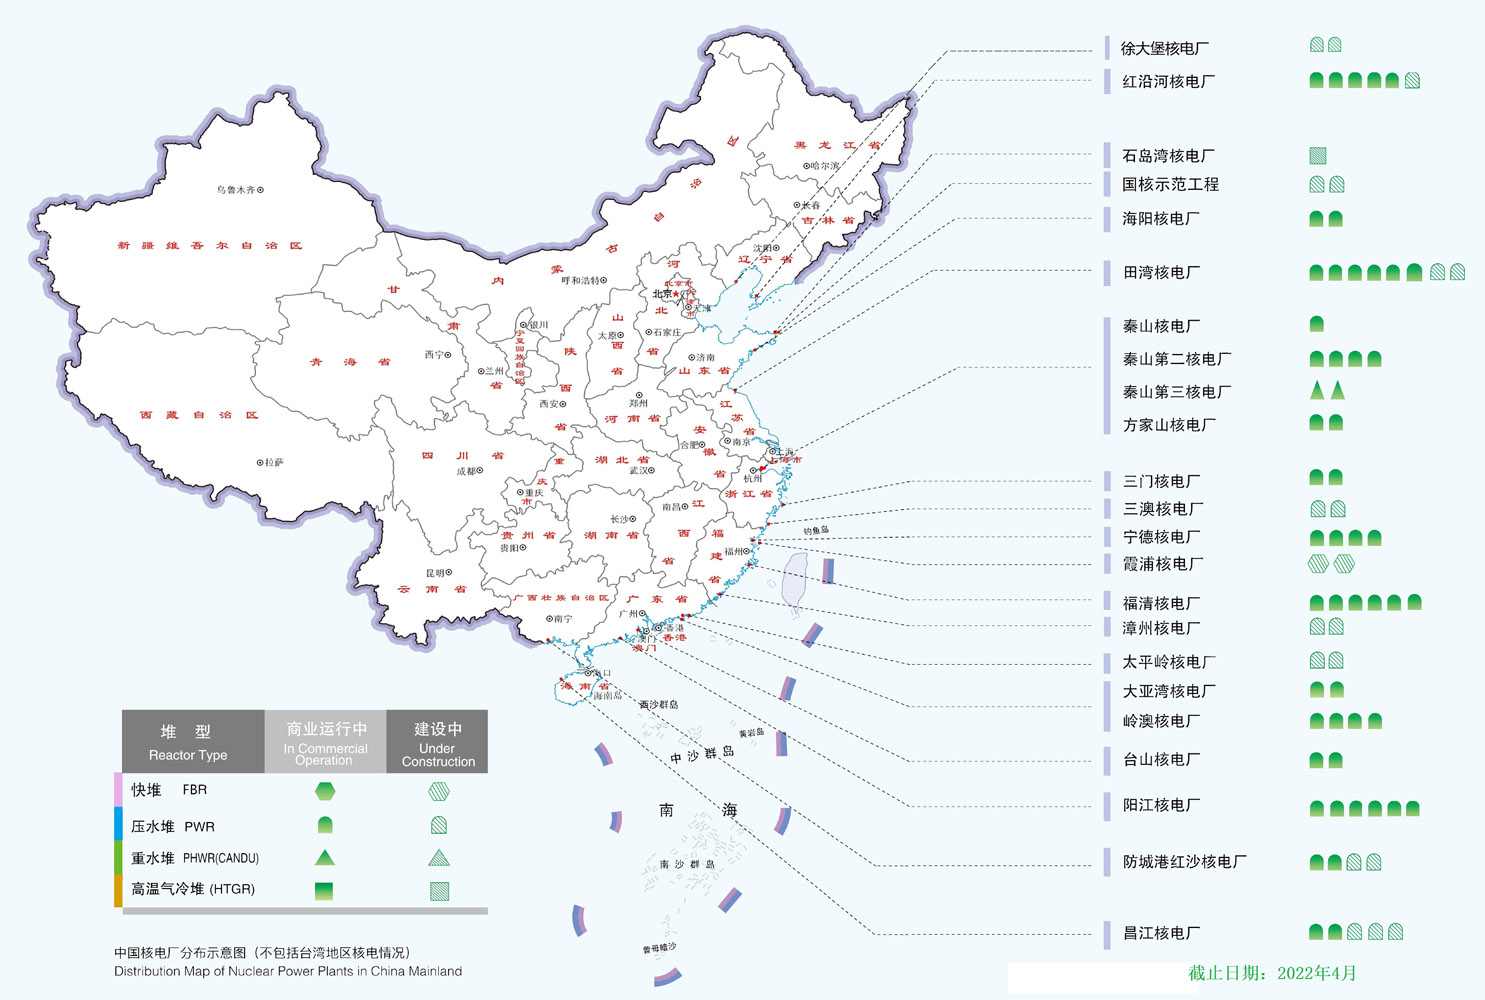 中国现有全部核电站图示